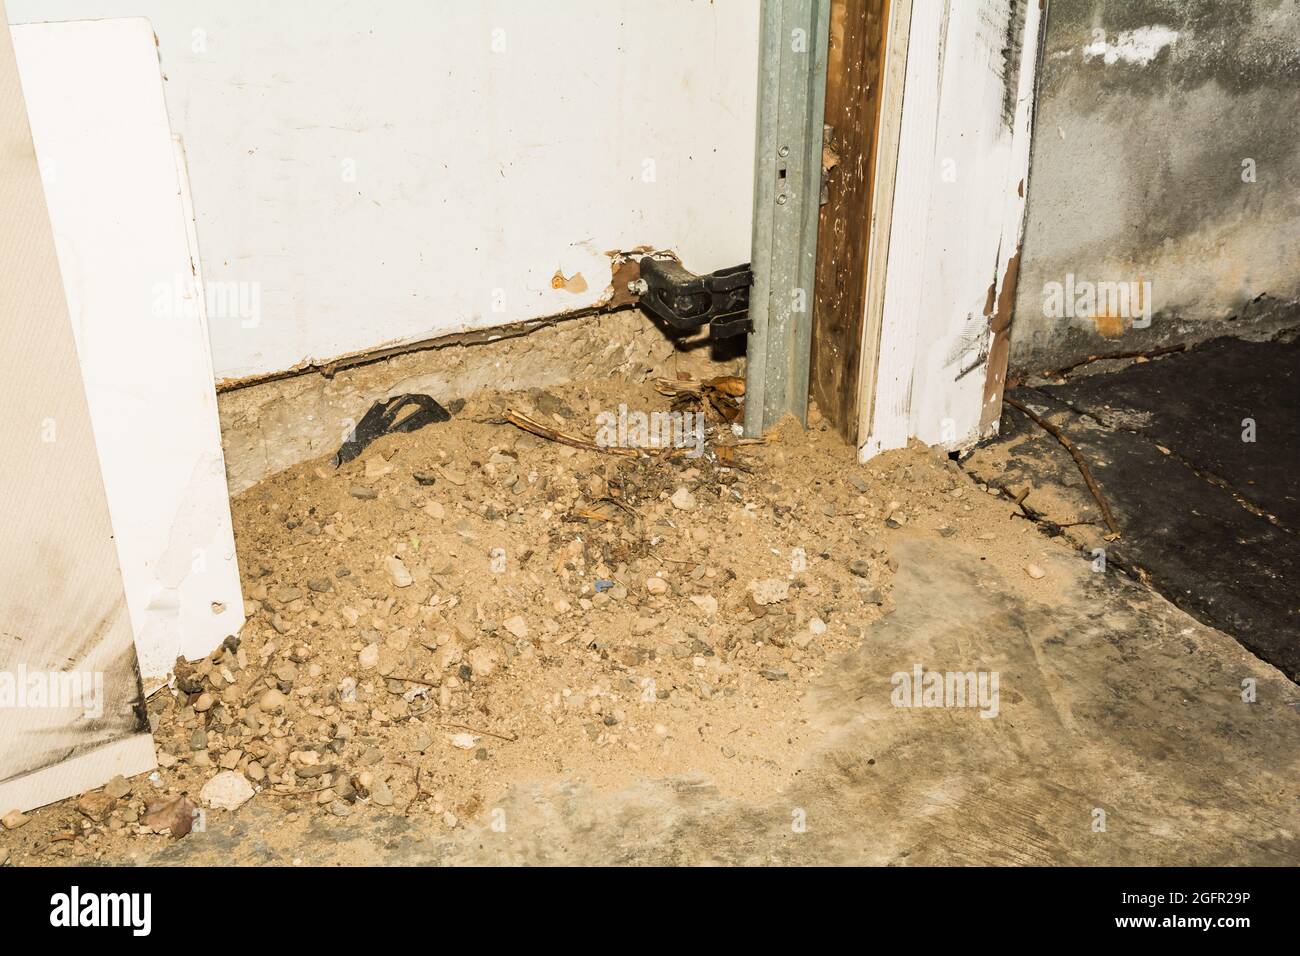 Norway Rat punto di ingresso sotto l'angolo della porta del garage. I ratti estrarranno lo sporco e i detriti dal tunnel all'interno della struttura per nascondere la loro presenza. Foto Stock